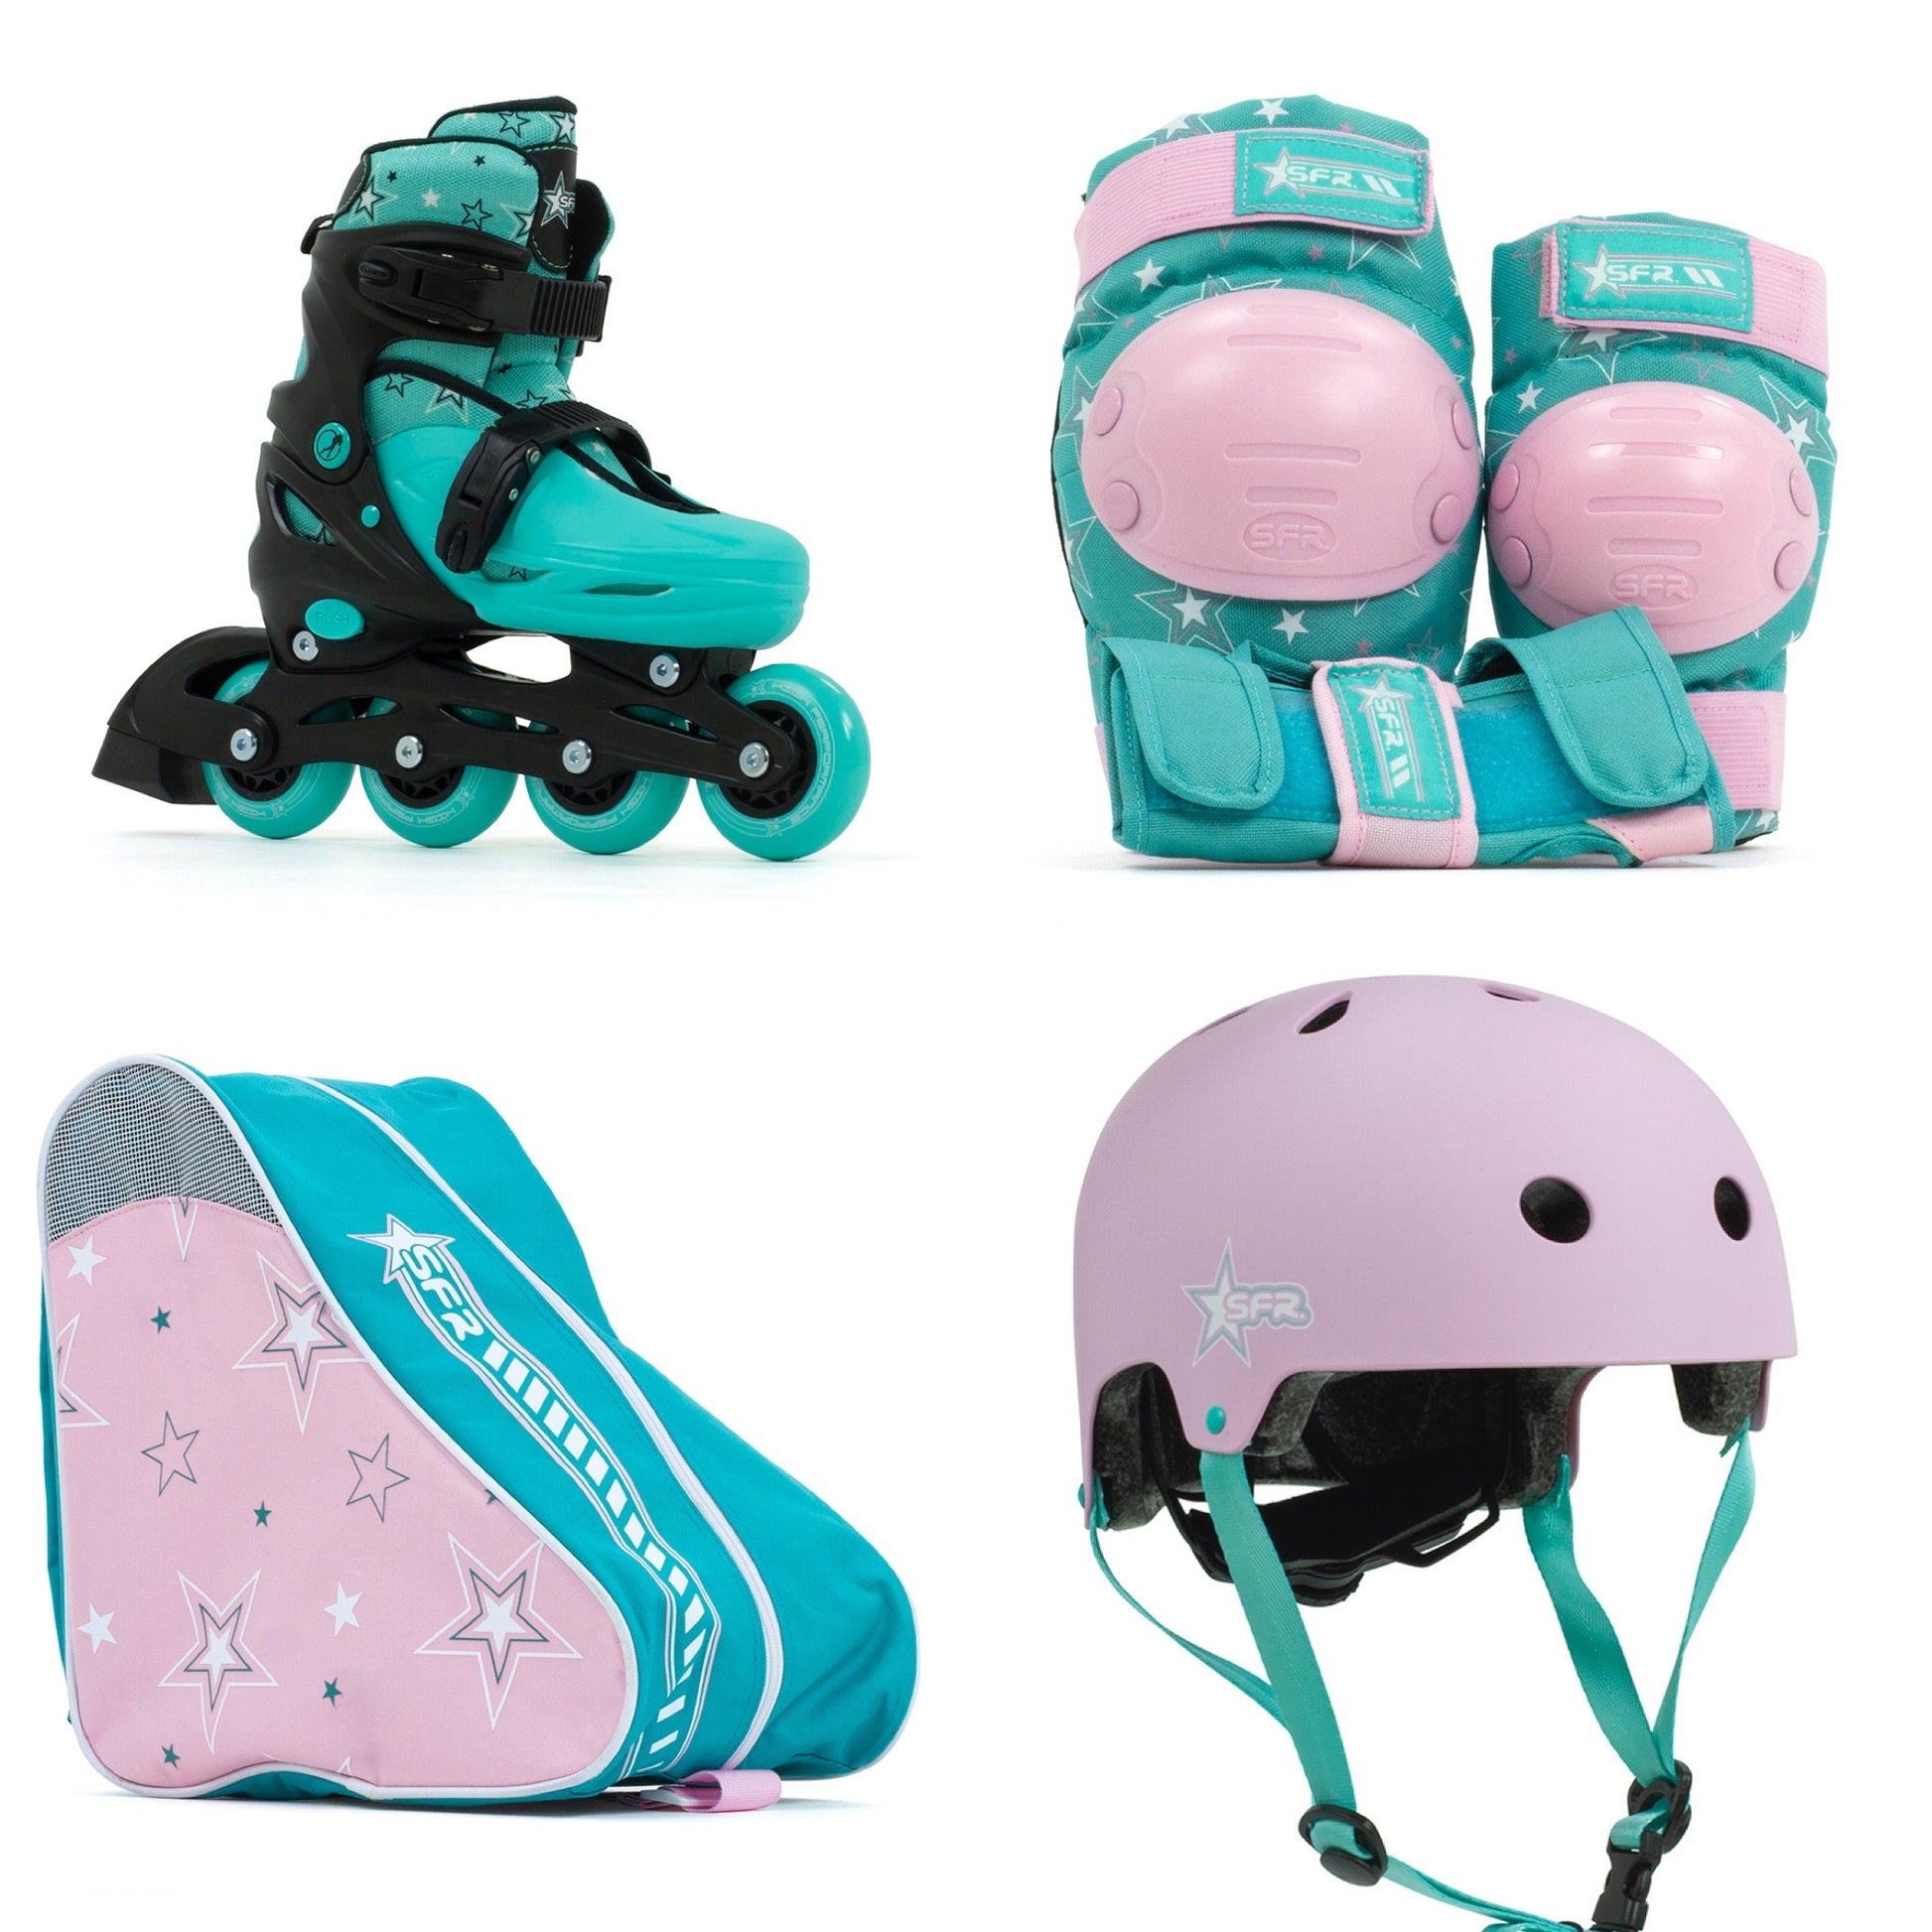 SFR Plasma Adjustable Children's Inline Skates - Teal Beginner Skate Package - inc Pads, Helmet & Bag - Momma Trucker Skates